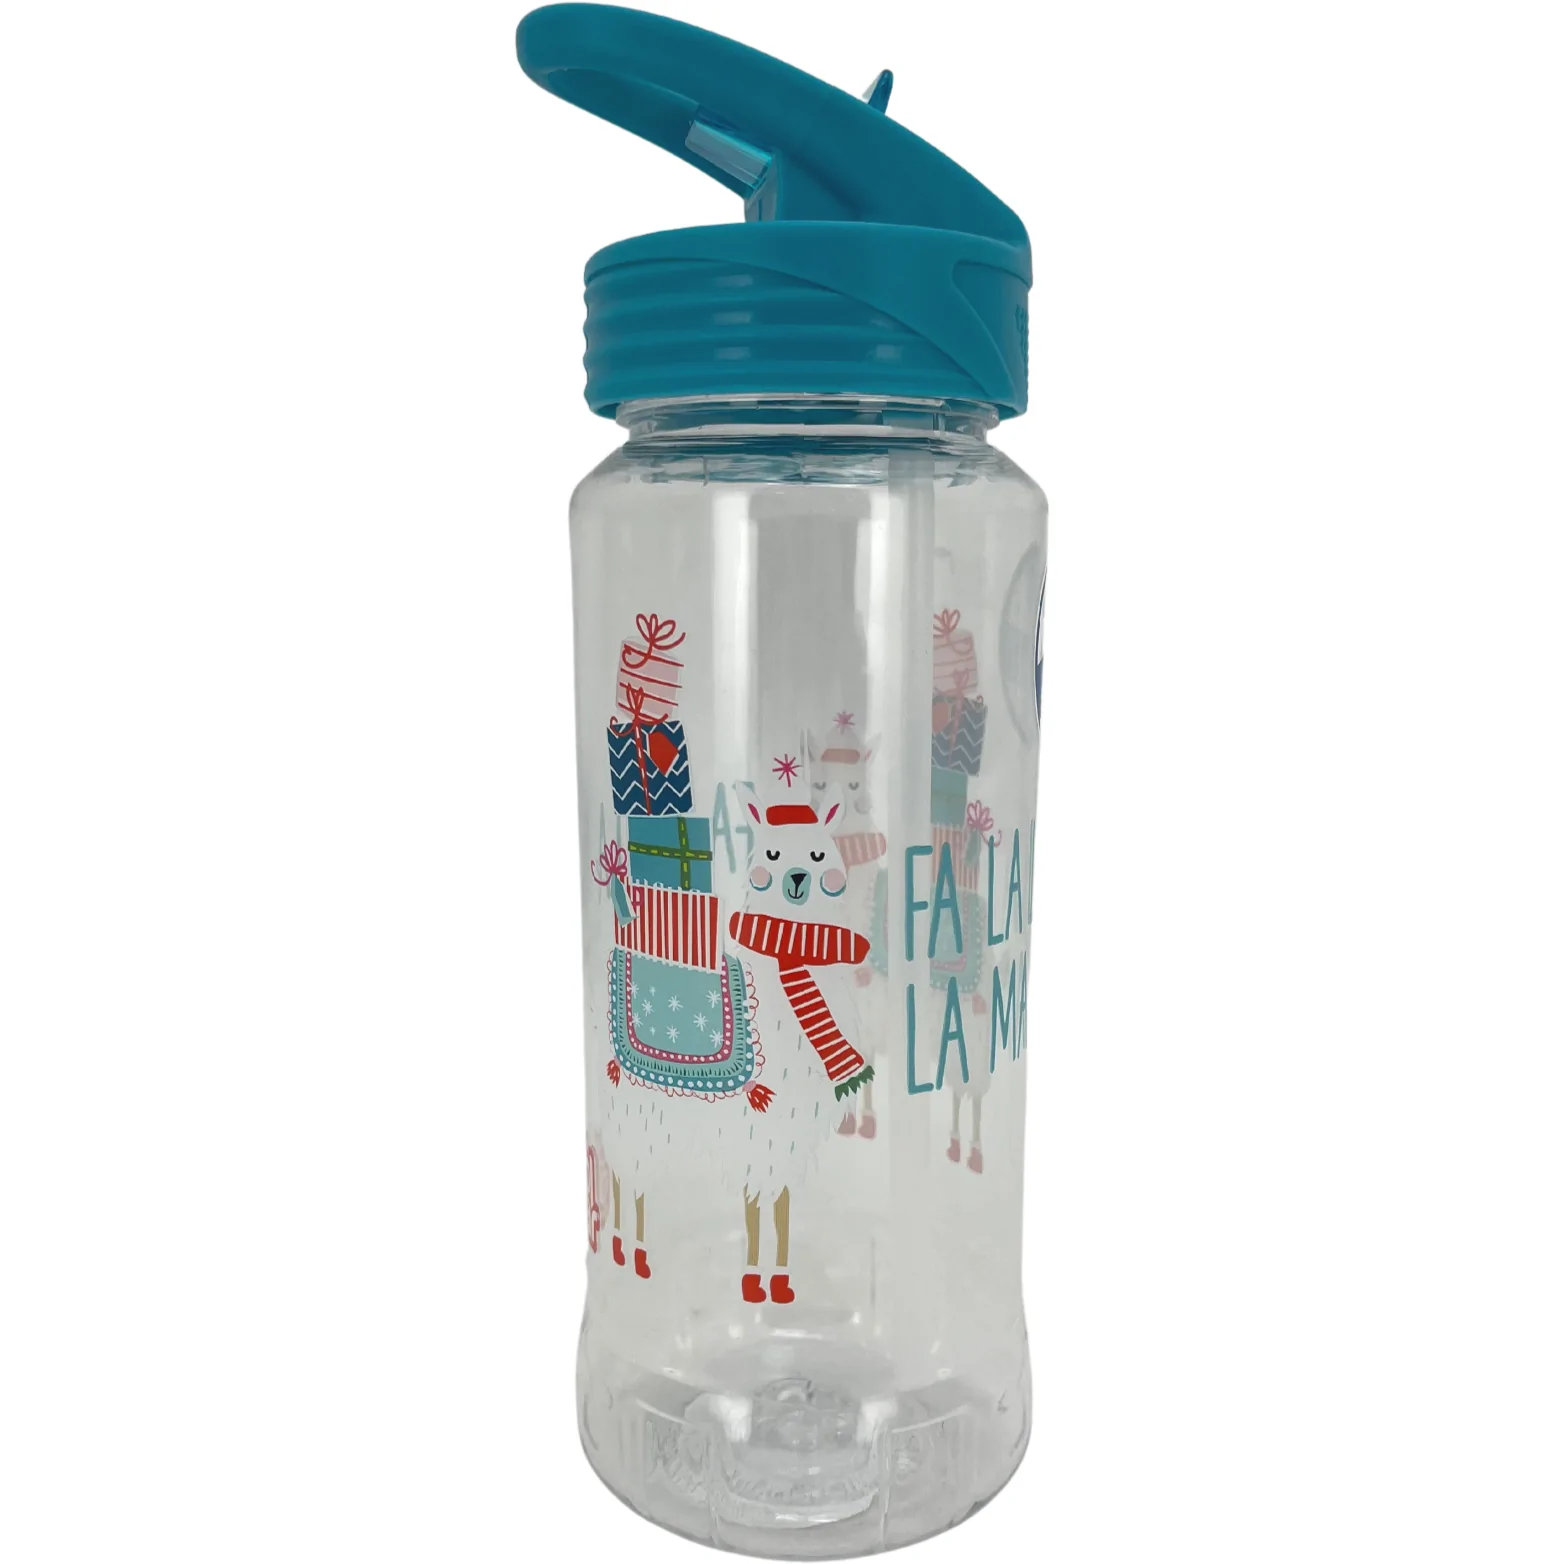 Cool Gear Kid's Christmas Water Bottle / Sip Bottle / Llama Theme / Light Blue